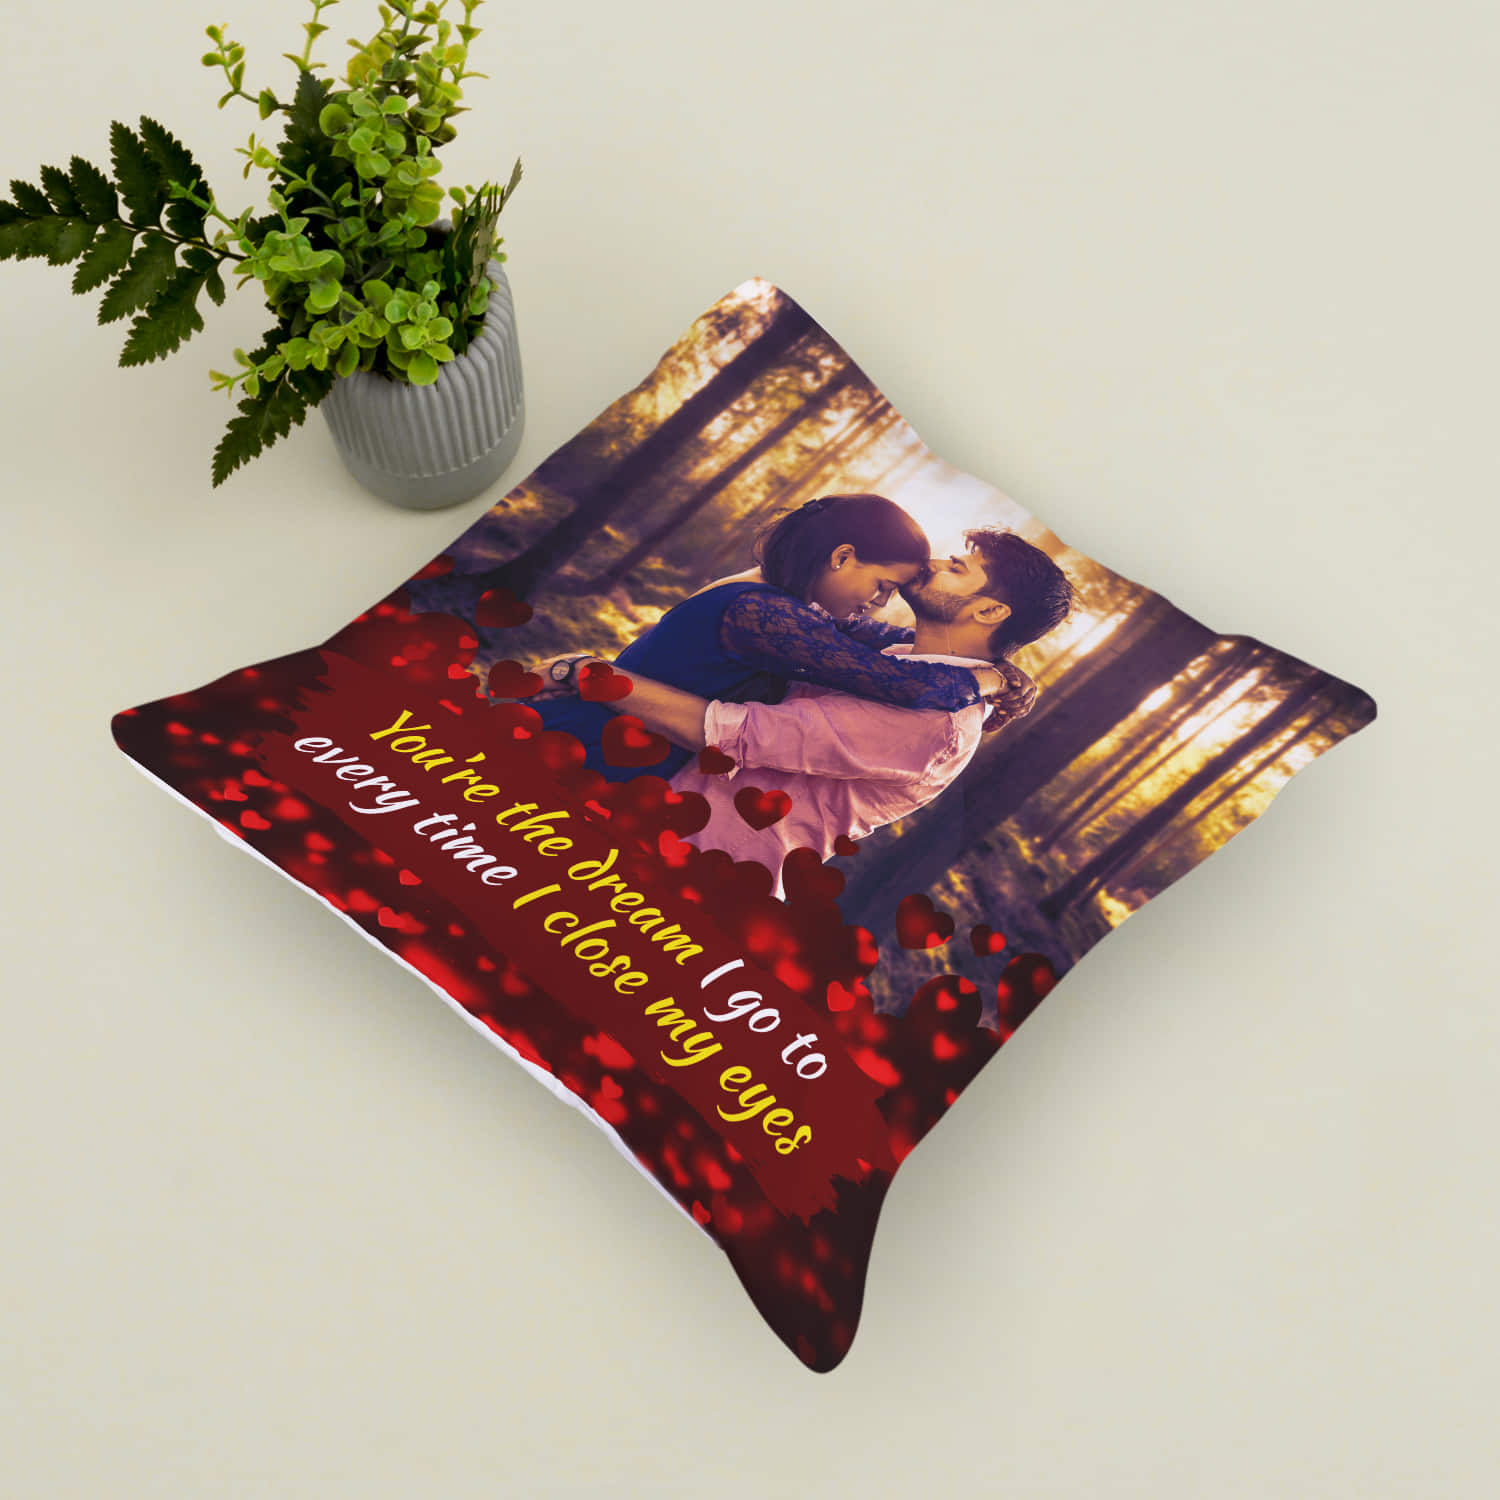 Customized Magic Pillow & Cushion Photos Pillow Best Gift for Everyone at  Rs 400 | Mumbai | ID: 21529649862